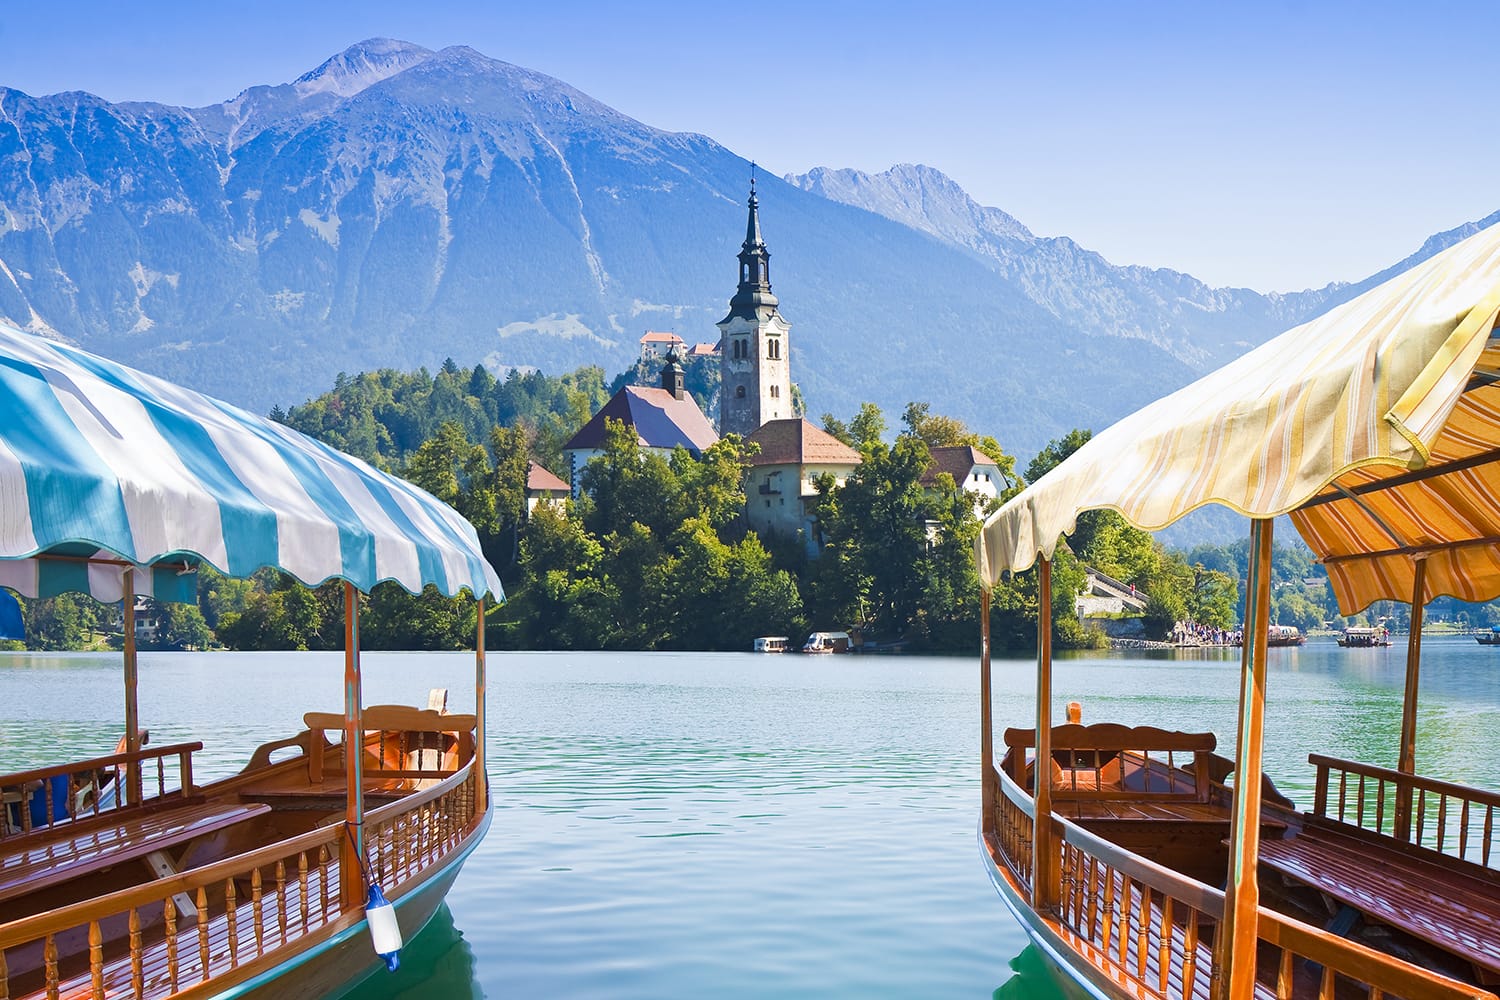 Τυπικές ξύλινες βάρκες, σε σλοβενική κλήση "Πλέτνα"στη λίμνη Bled, την πιο διάσημη λίμνη της Σλοβενίας με το νησί της εκκλησίας (Ευρώπη - Σλοβενία)